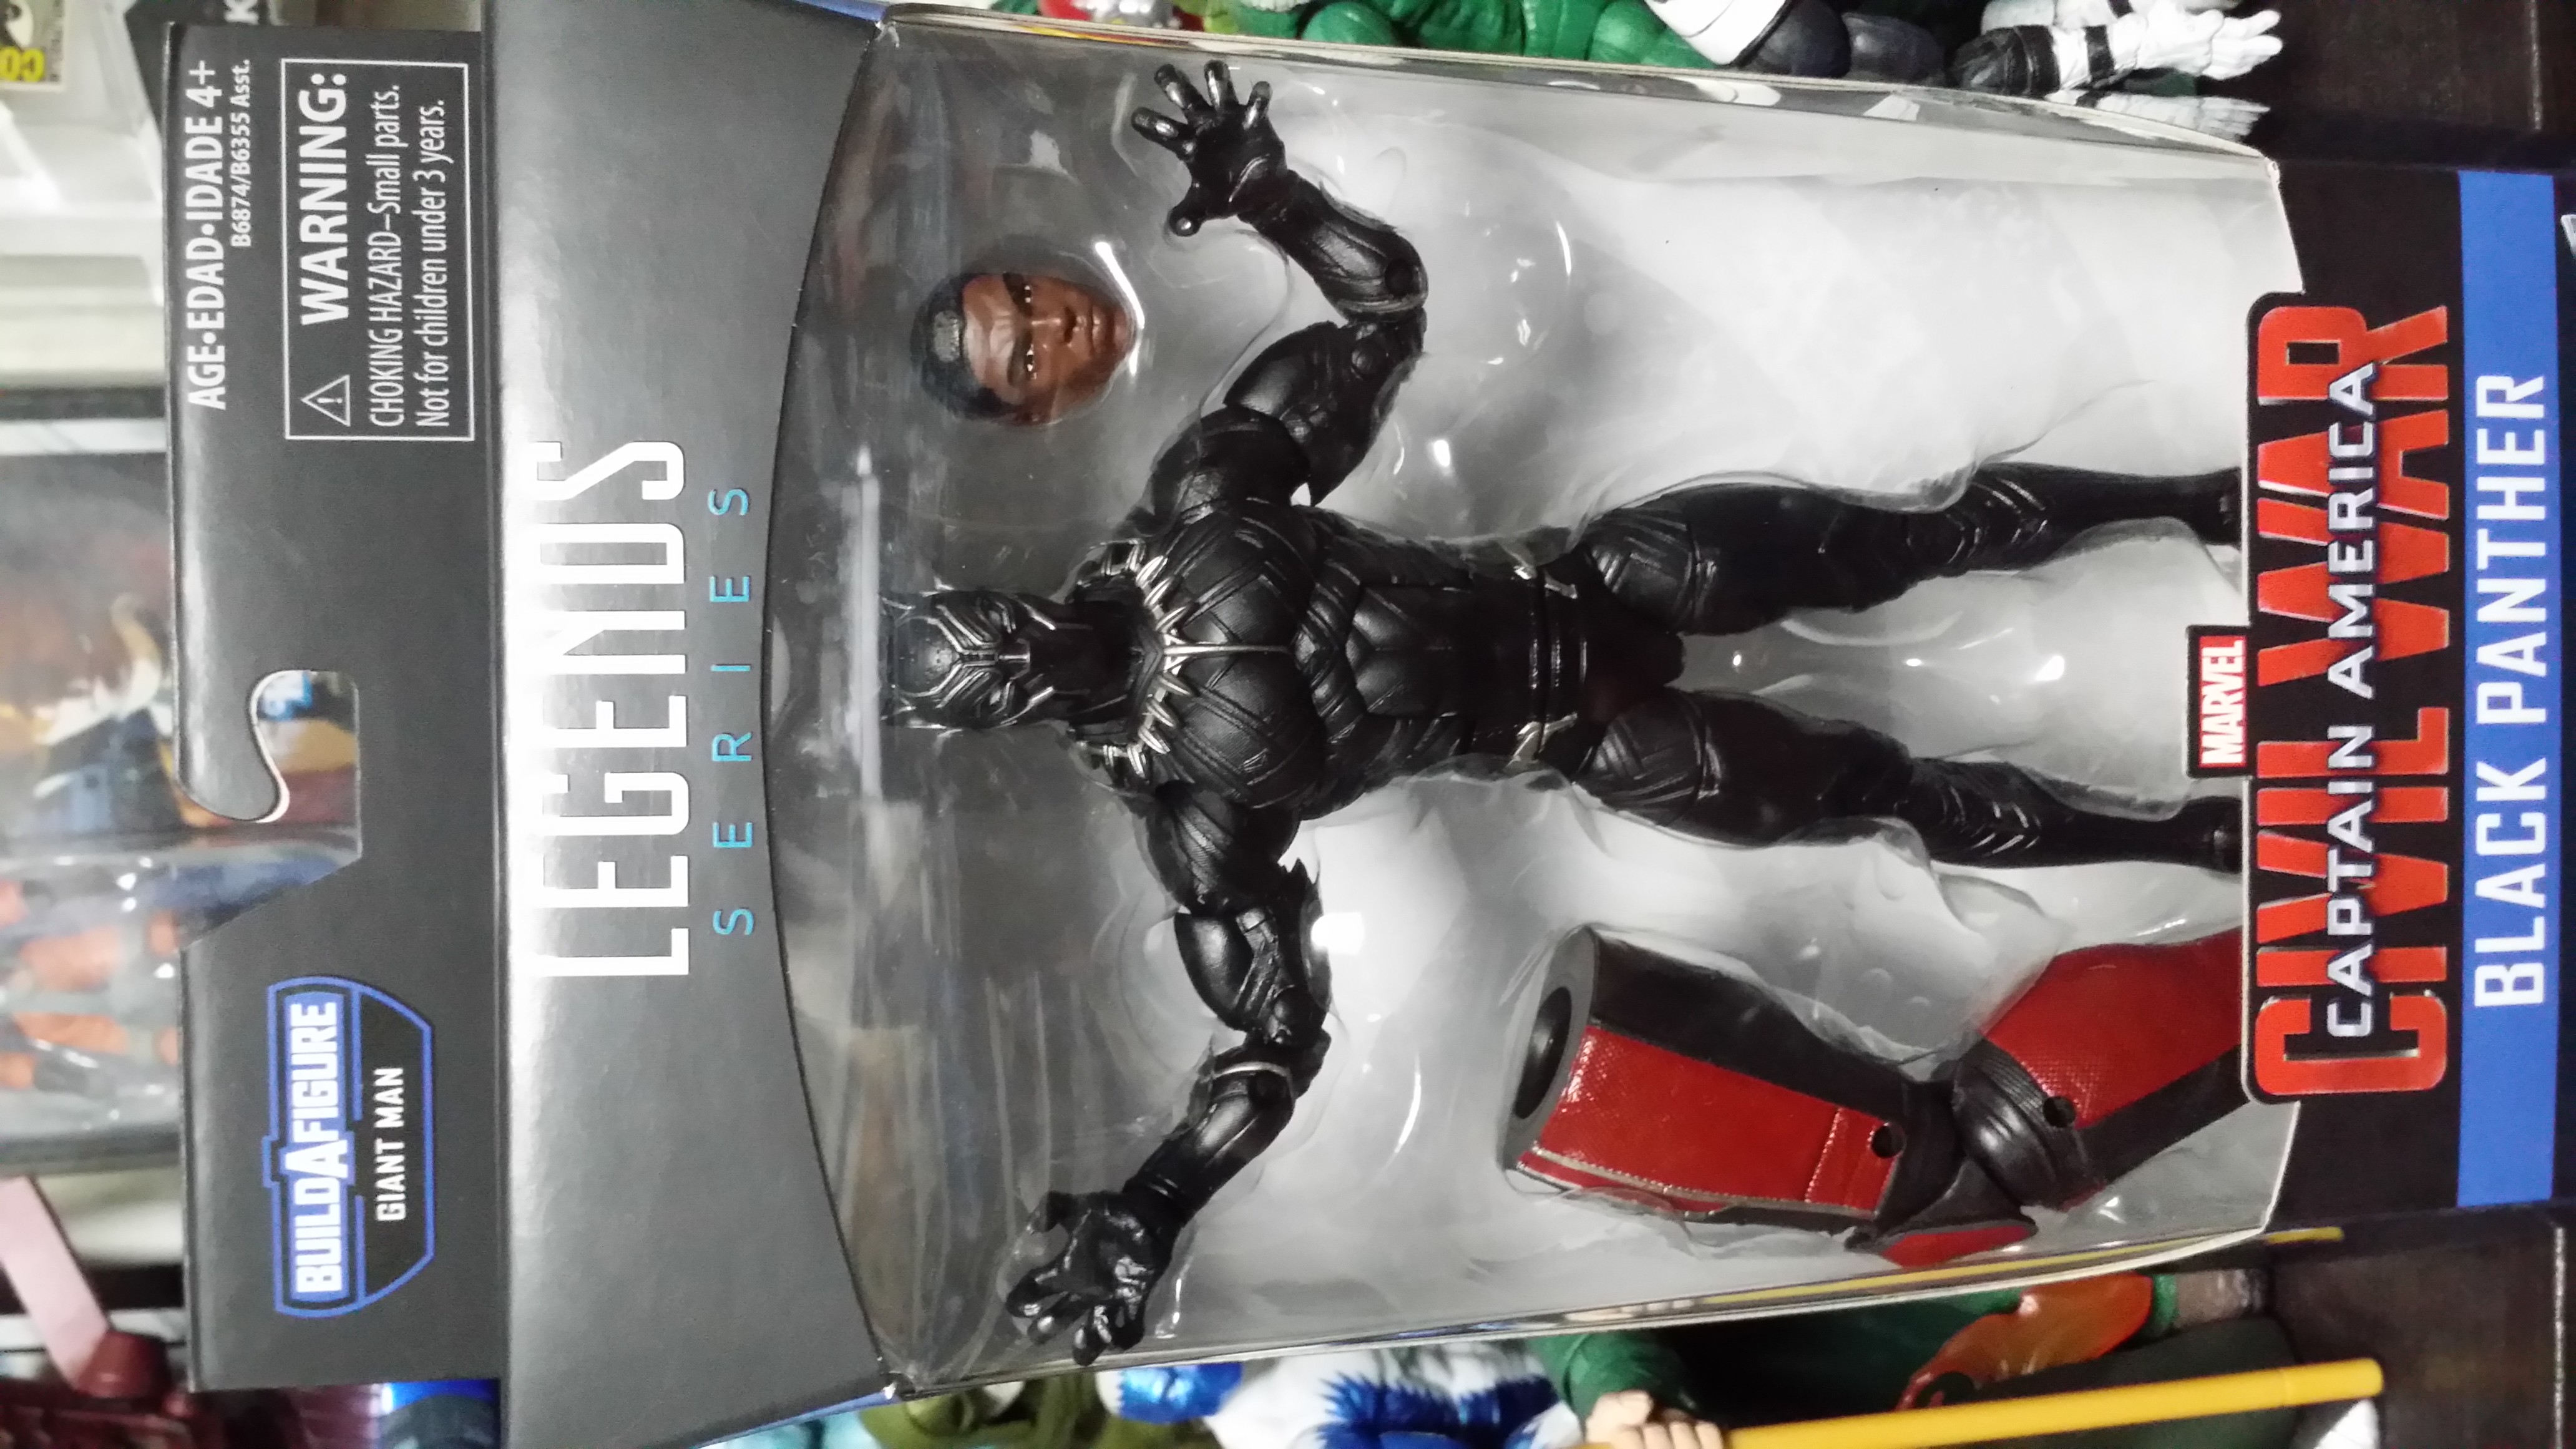 Marvel Legends 6" movie Black Panther (Captain America Civil War wave)